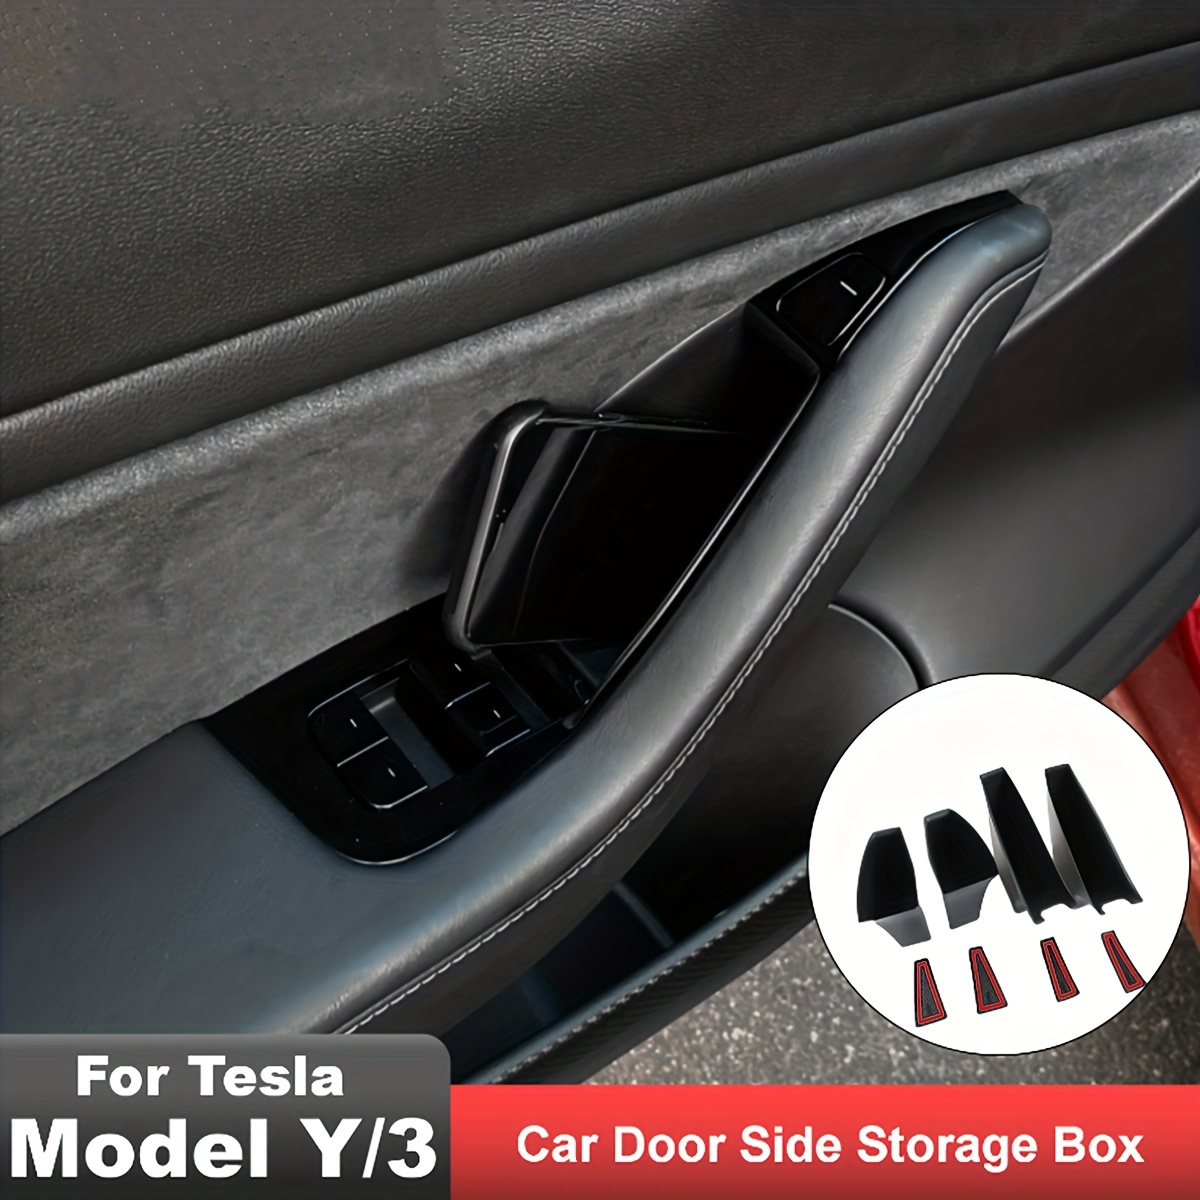 Car Door Tray Organizer Tesla Model Y Front Rear Door Slot Side